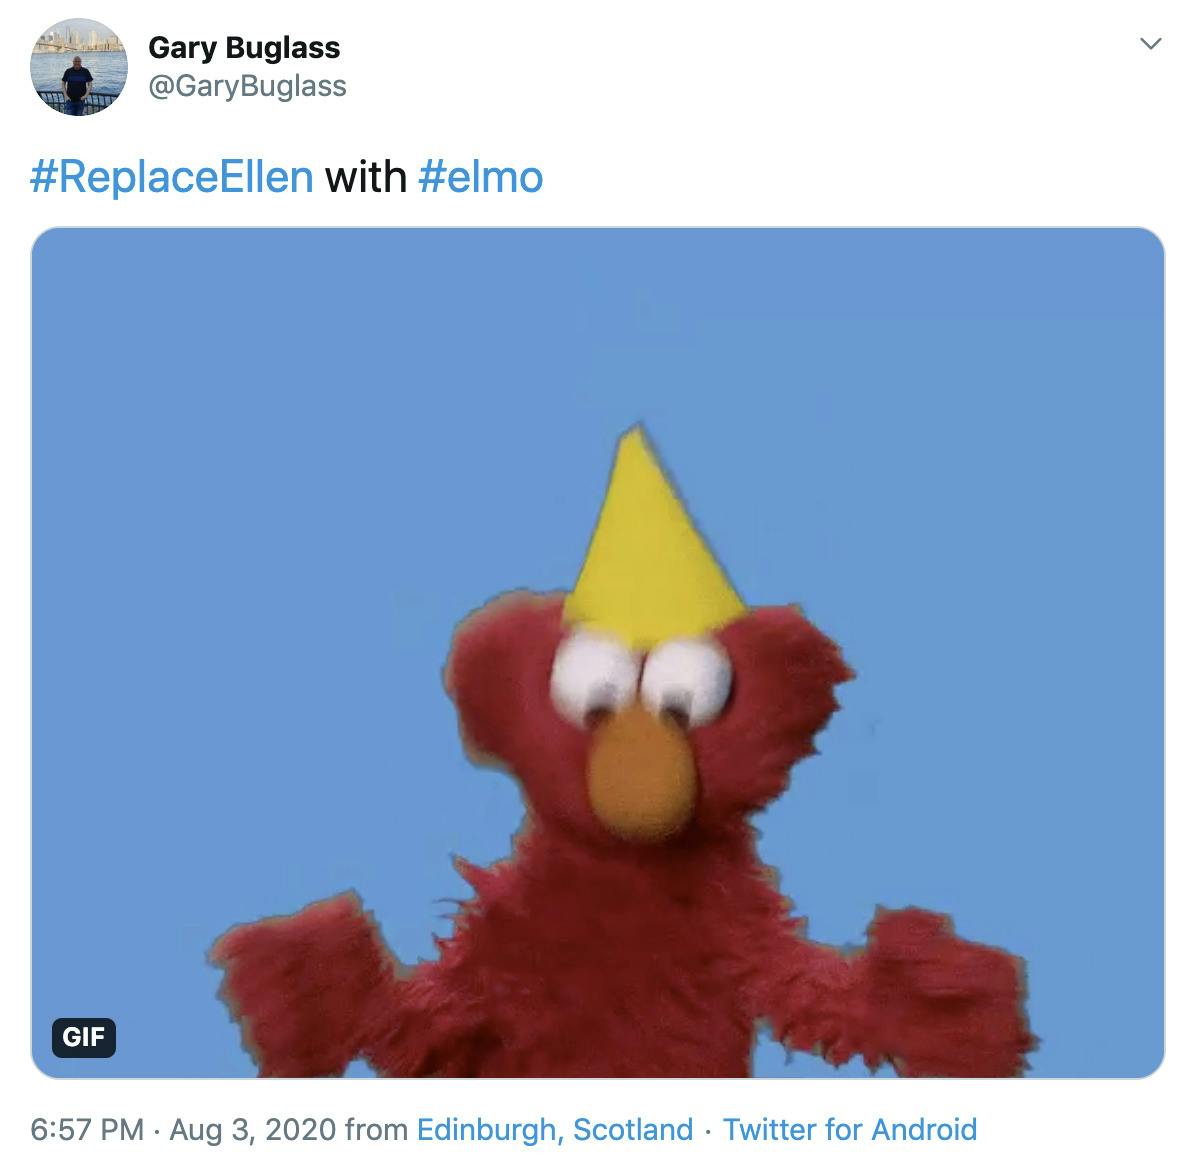 "#ReplaceEllen with #elmo" image of Elmo dancing